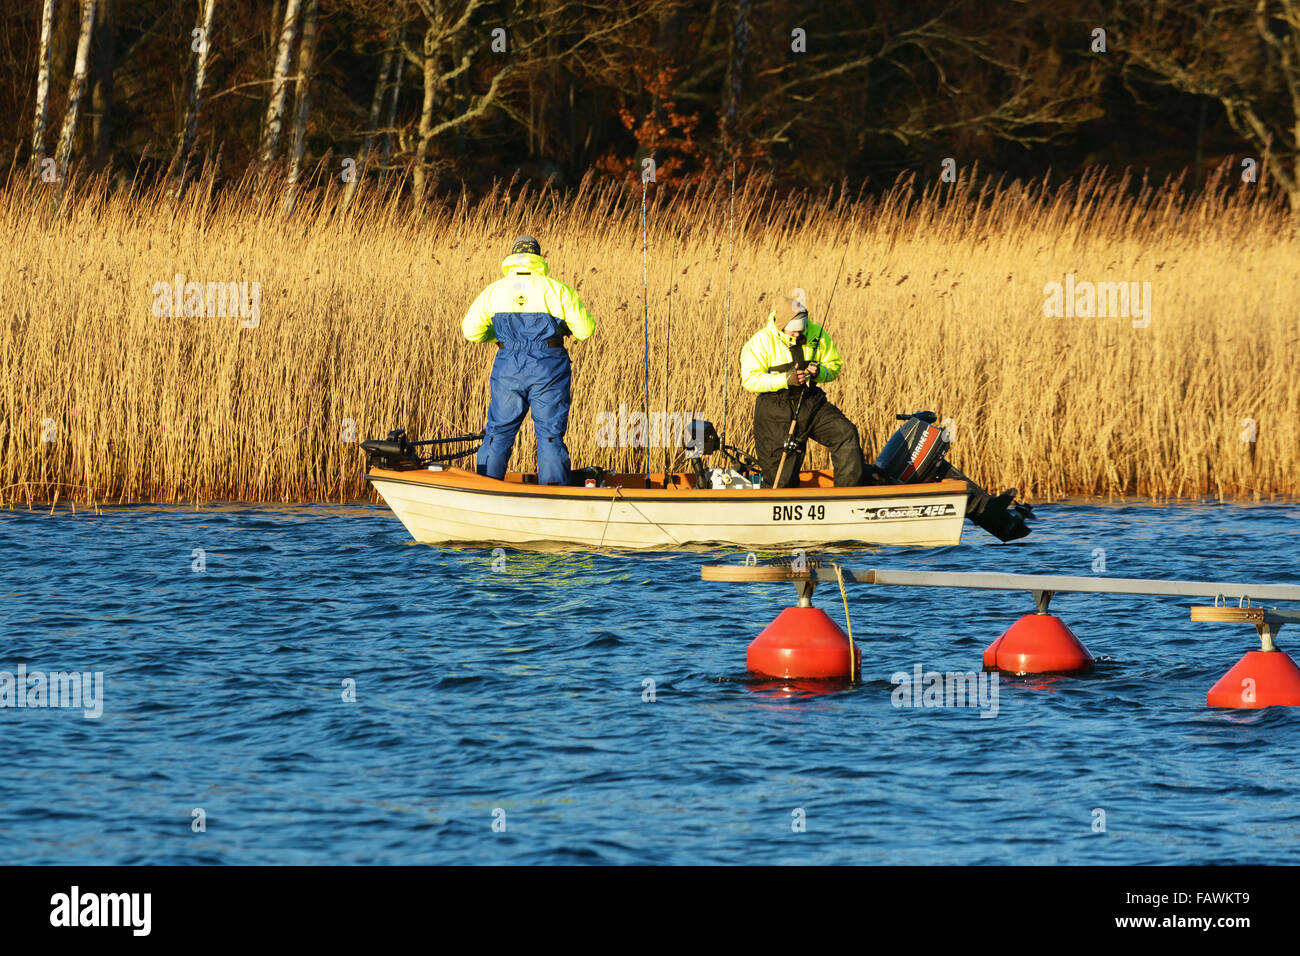 Ronneby, Suède - 30 décembre 2015 : deux personnes de pêche un petit bateau ouvert à la fin de décembre. La Suède avait t moyenne très élevée Banque D'Images